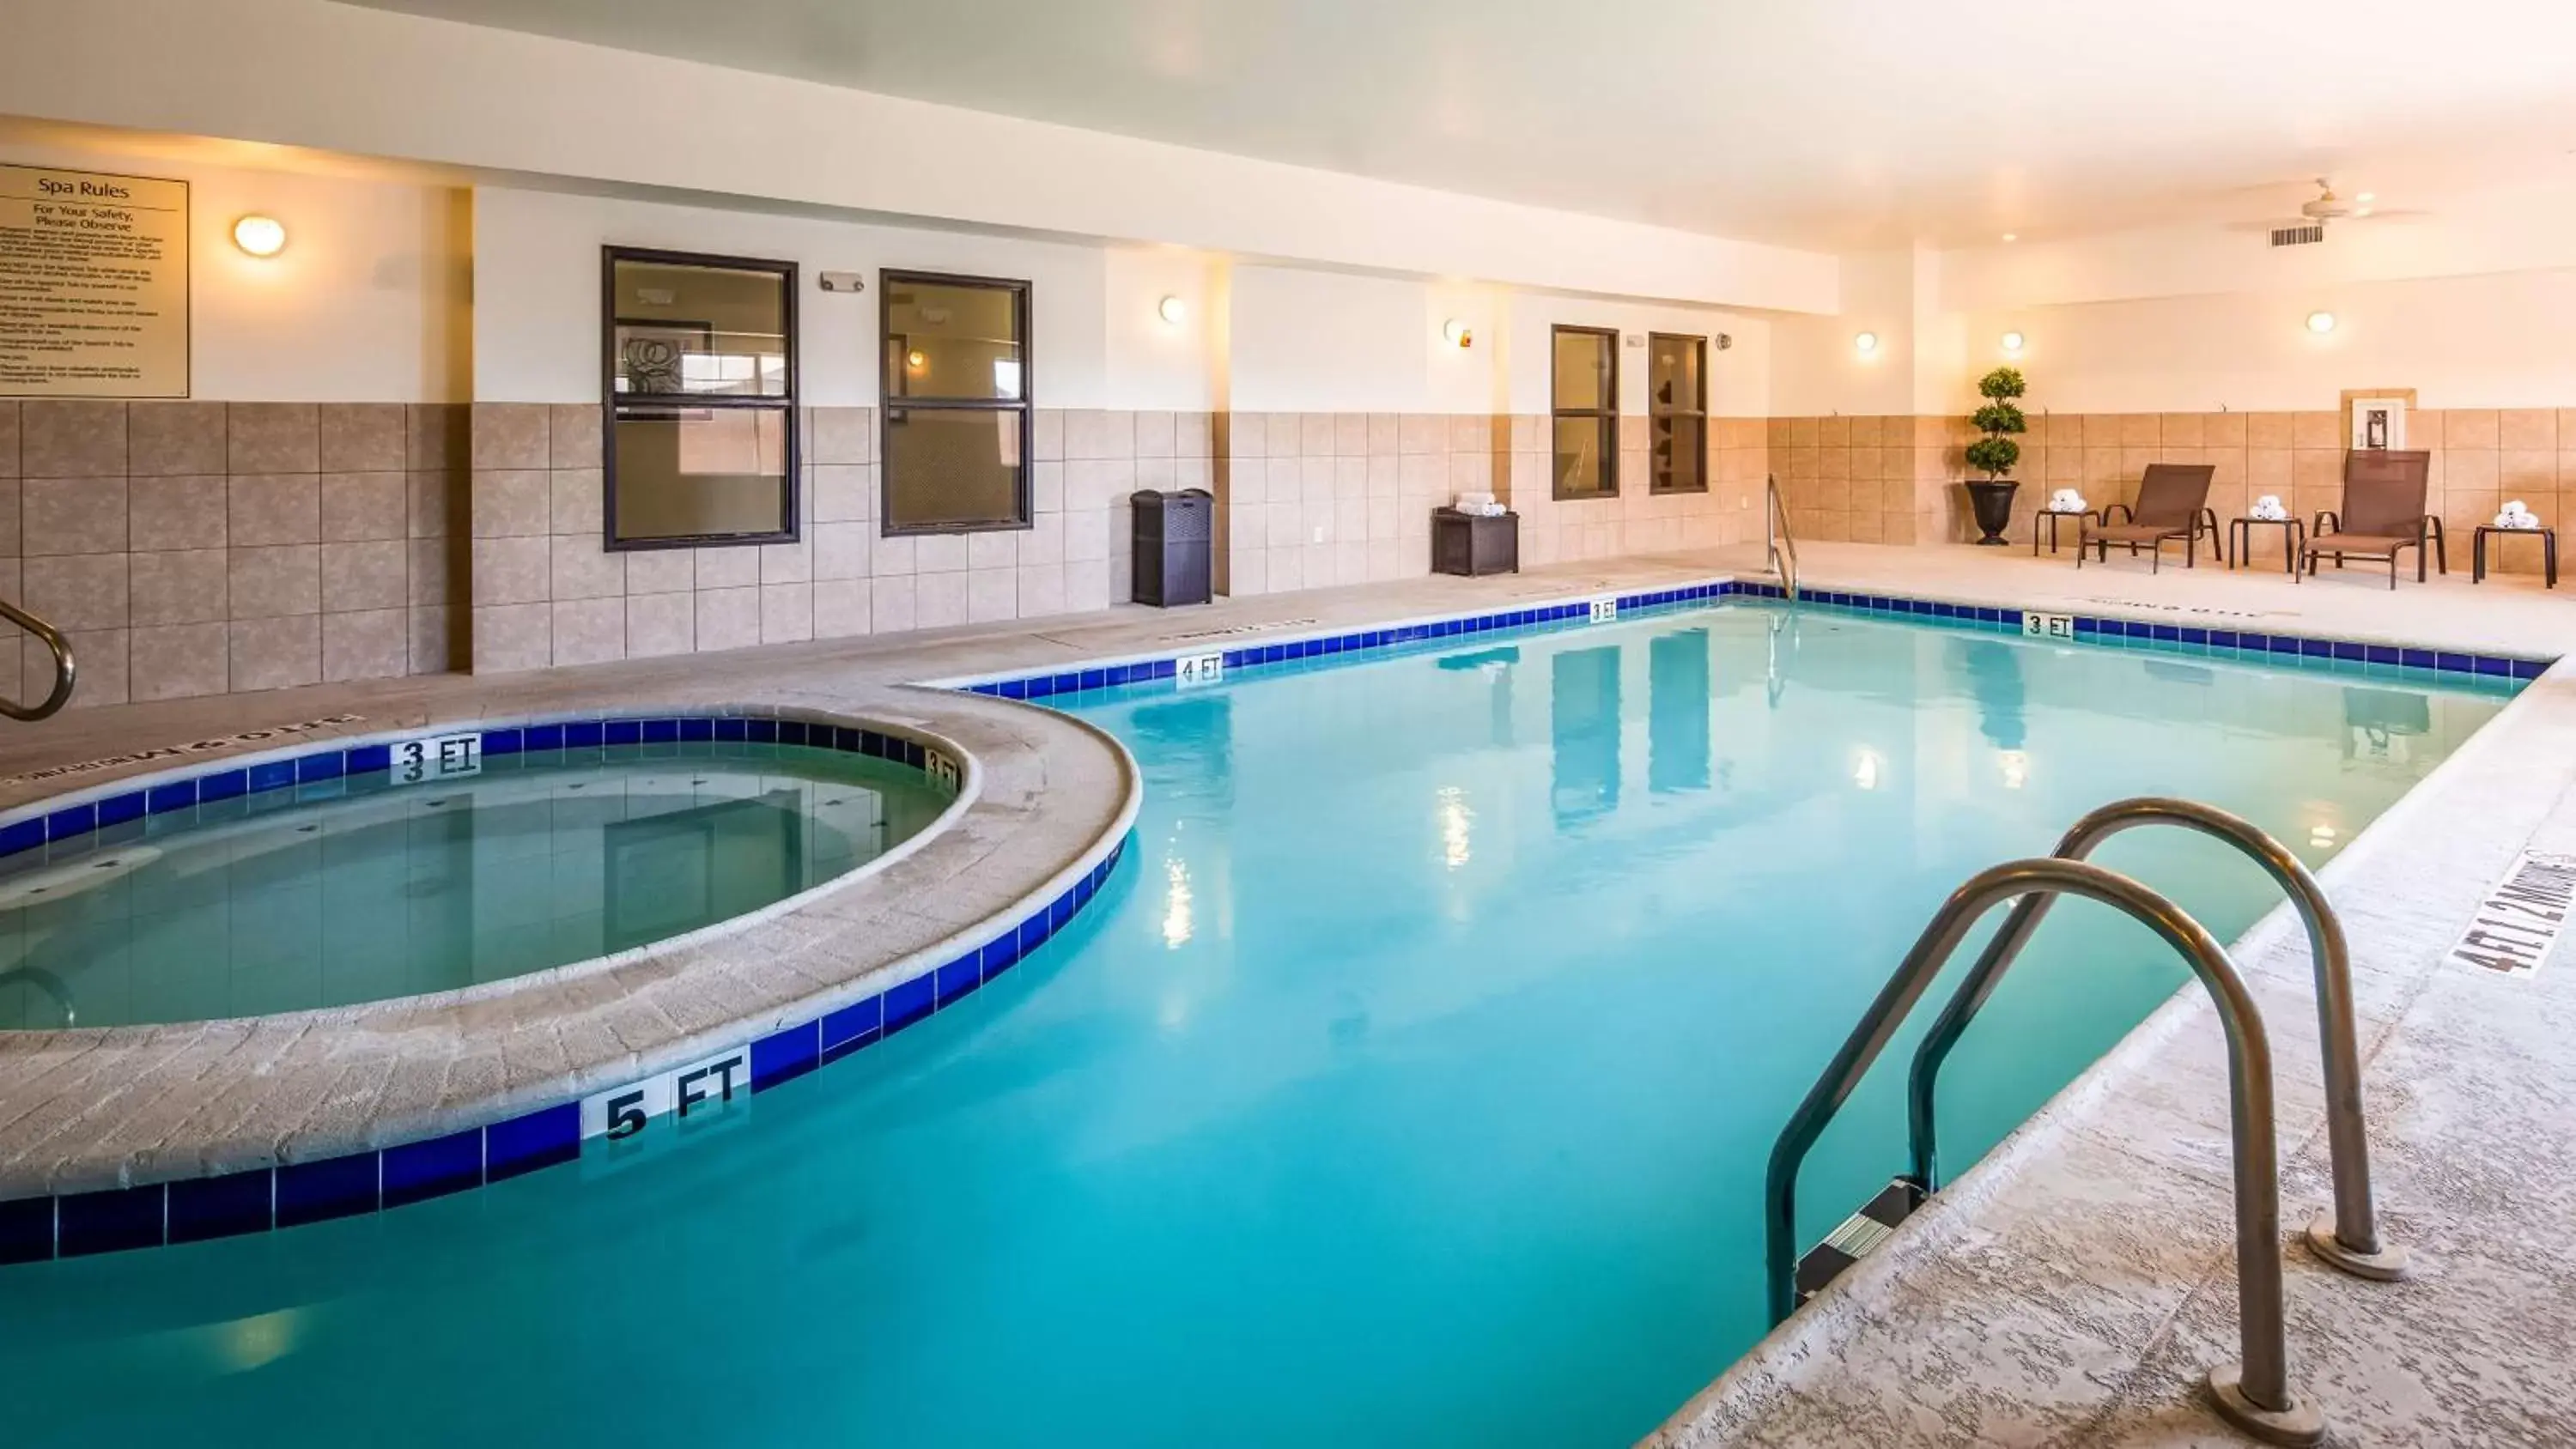 On site, Swimming Pool in Best Western Plus Seminole Hotel & Suites